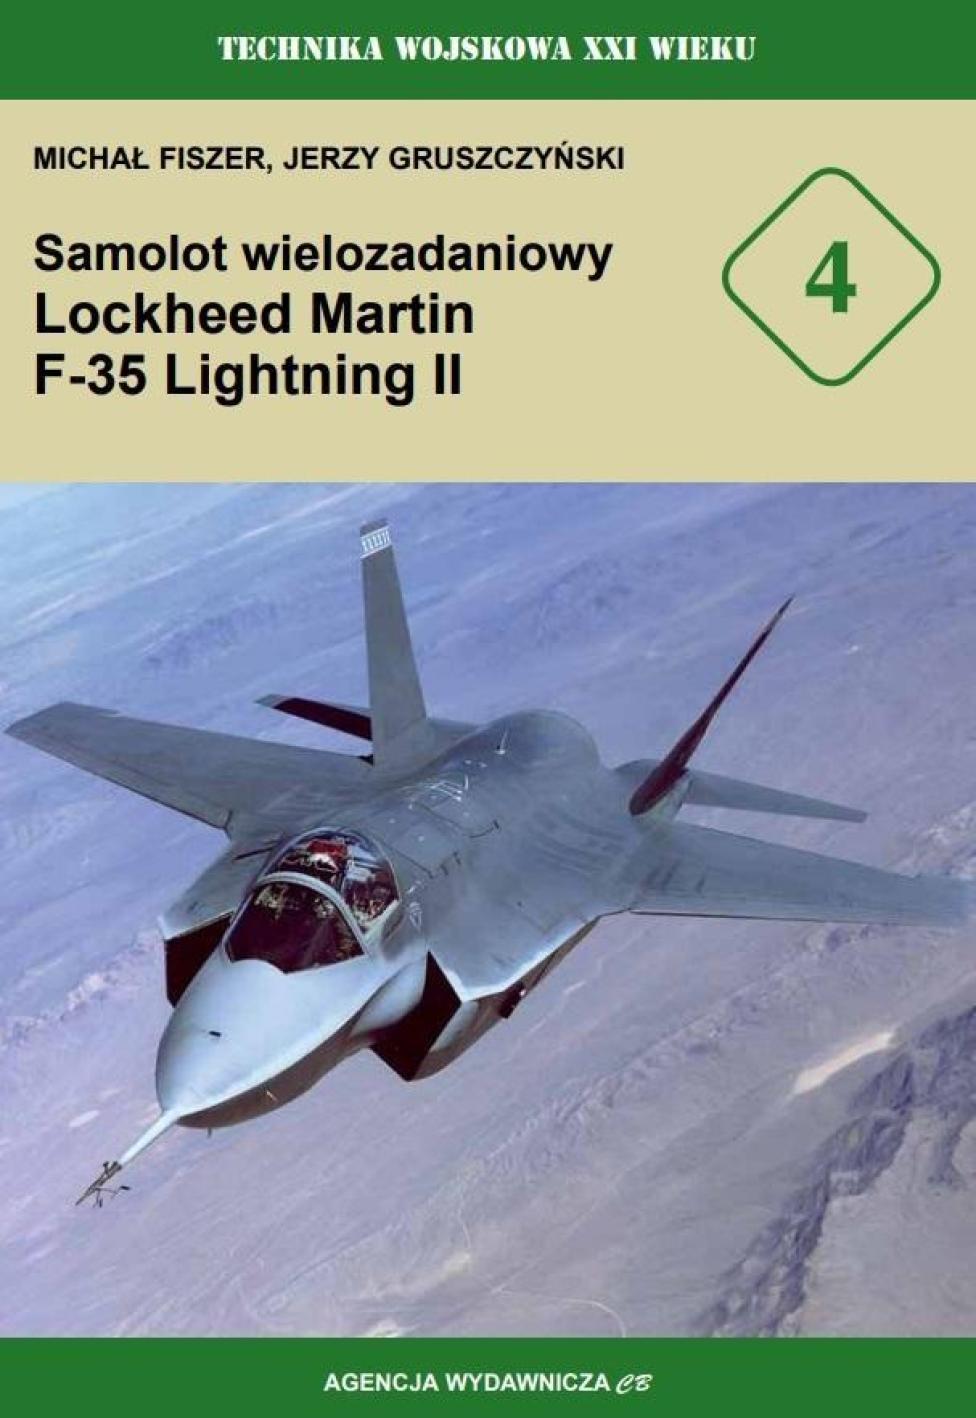 Książka "Samolot wielozadaniowy Lockheed Martin F-35 Lightning II" (fot. Agencja Wydawnicza CB)